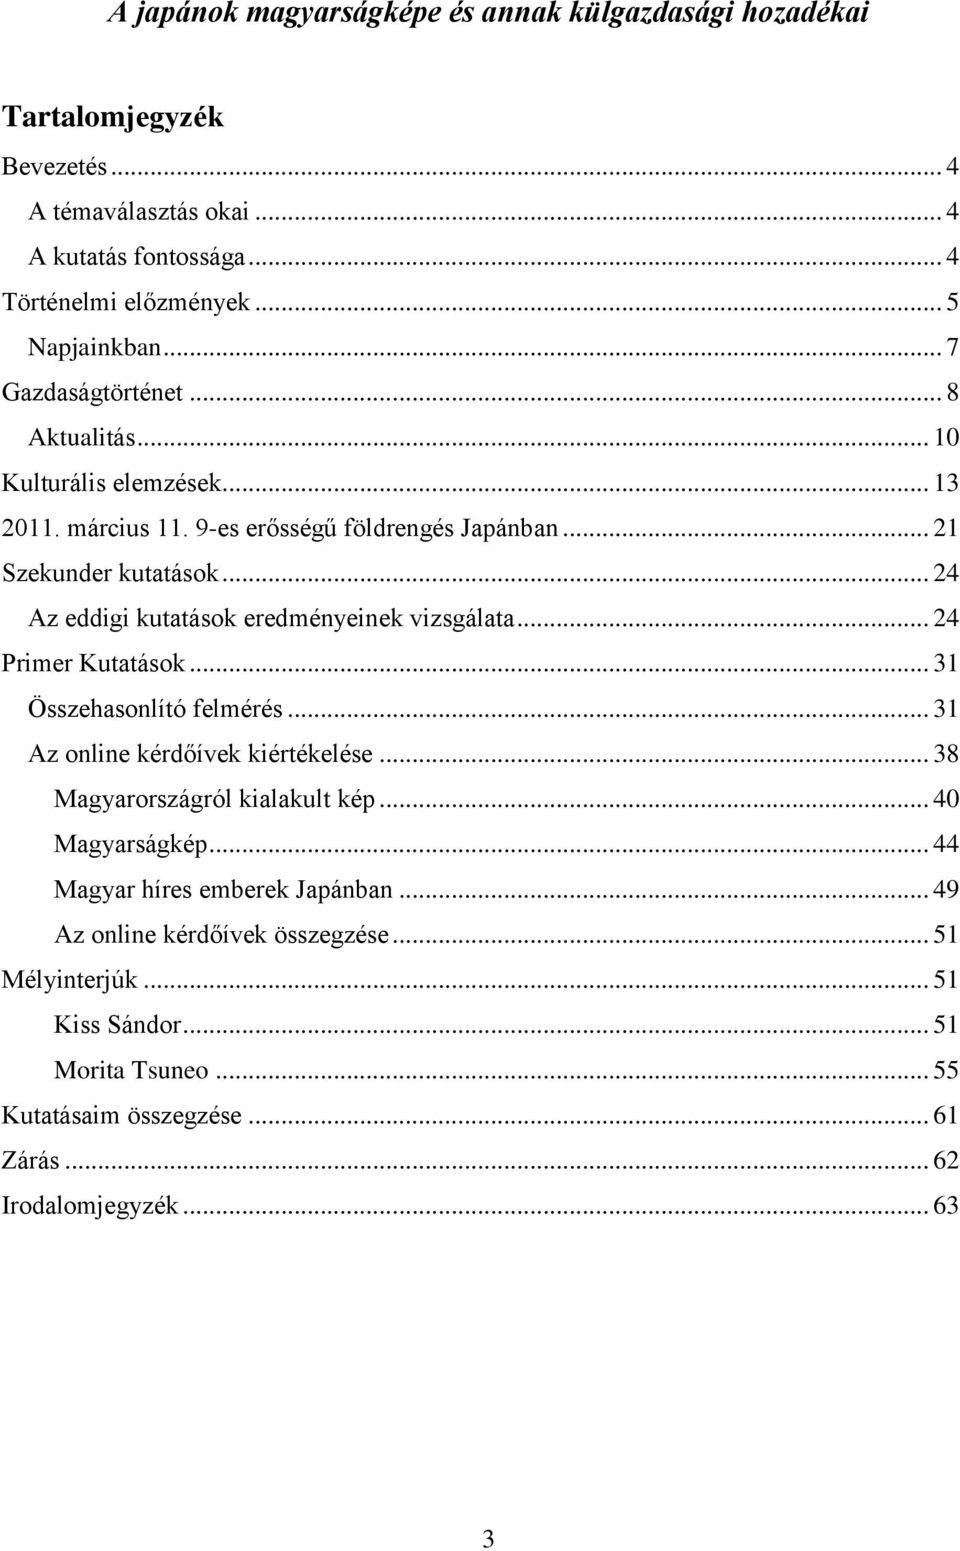 .. 24 Az eddigi kutatások eredményeinek vizsgálata... 24 Primer Kutatások... 31 Összehasonlító felmérés... 31 Az online kérdőívek kiértékelése... 38 Magyarországról kialakult kép.